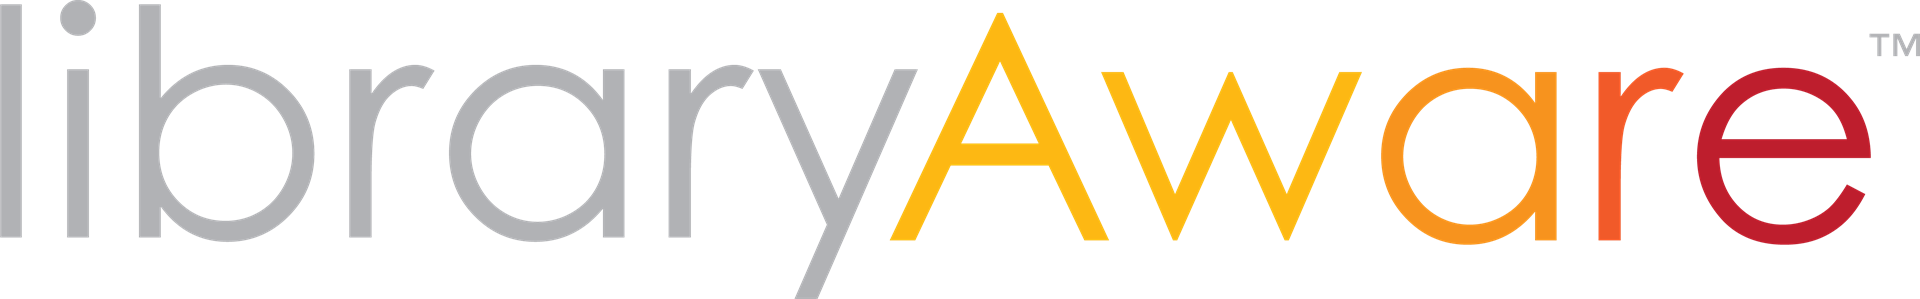 library aware logo